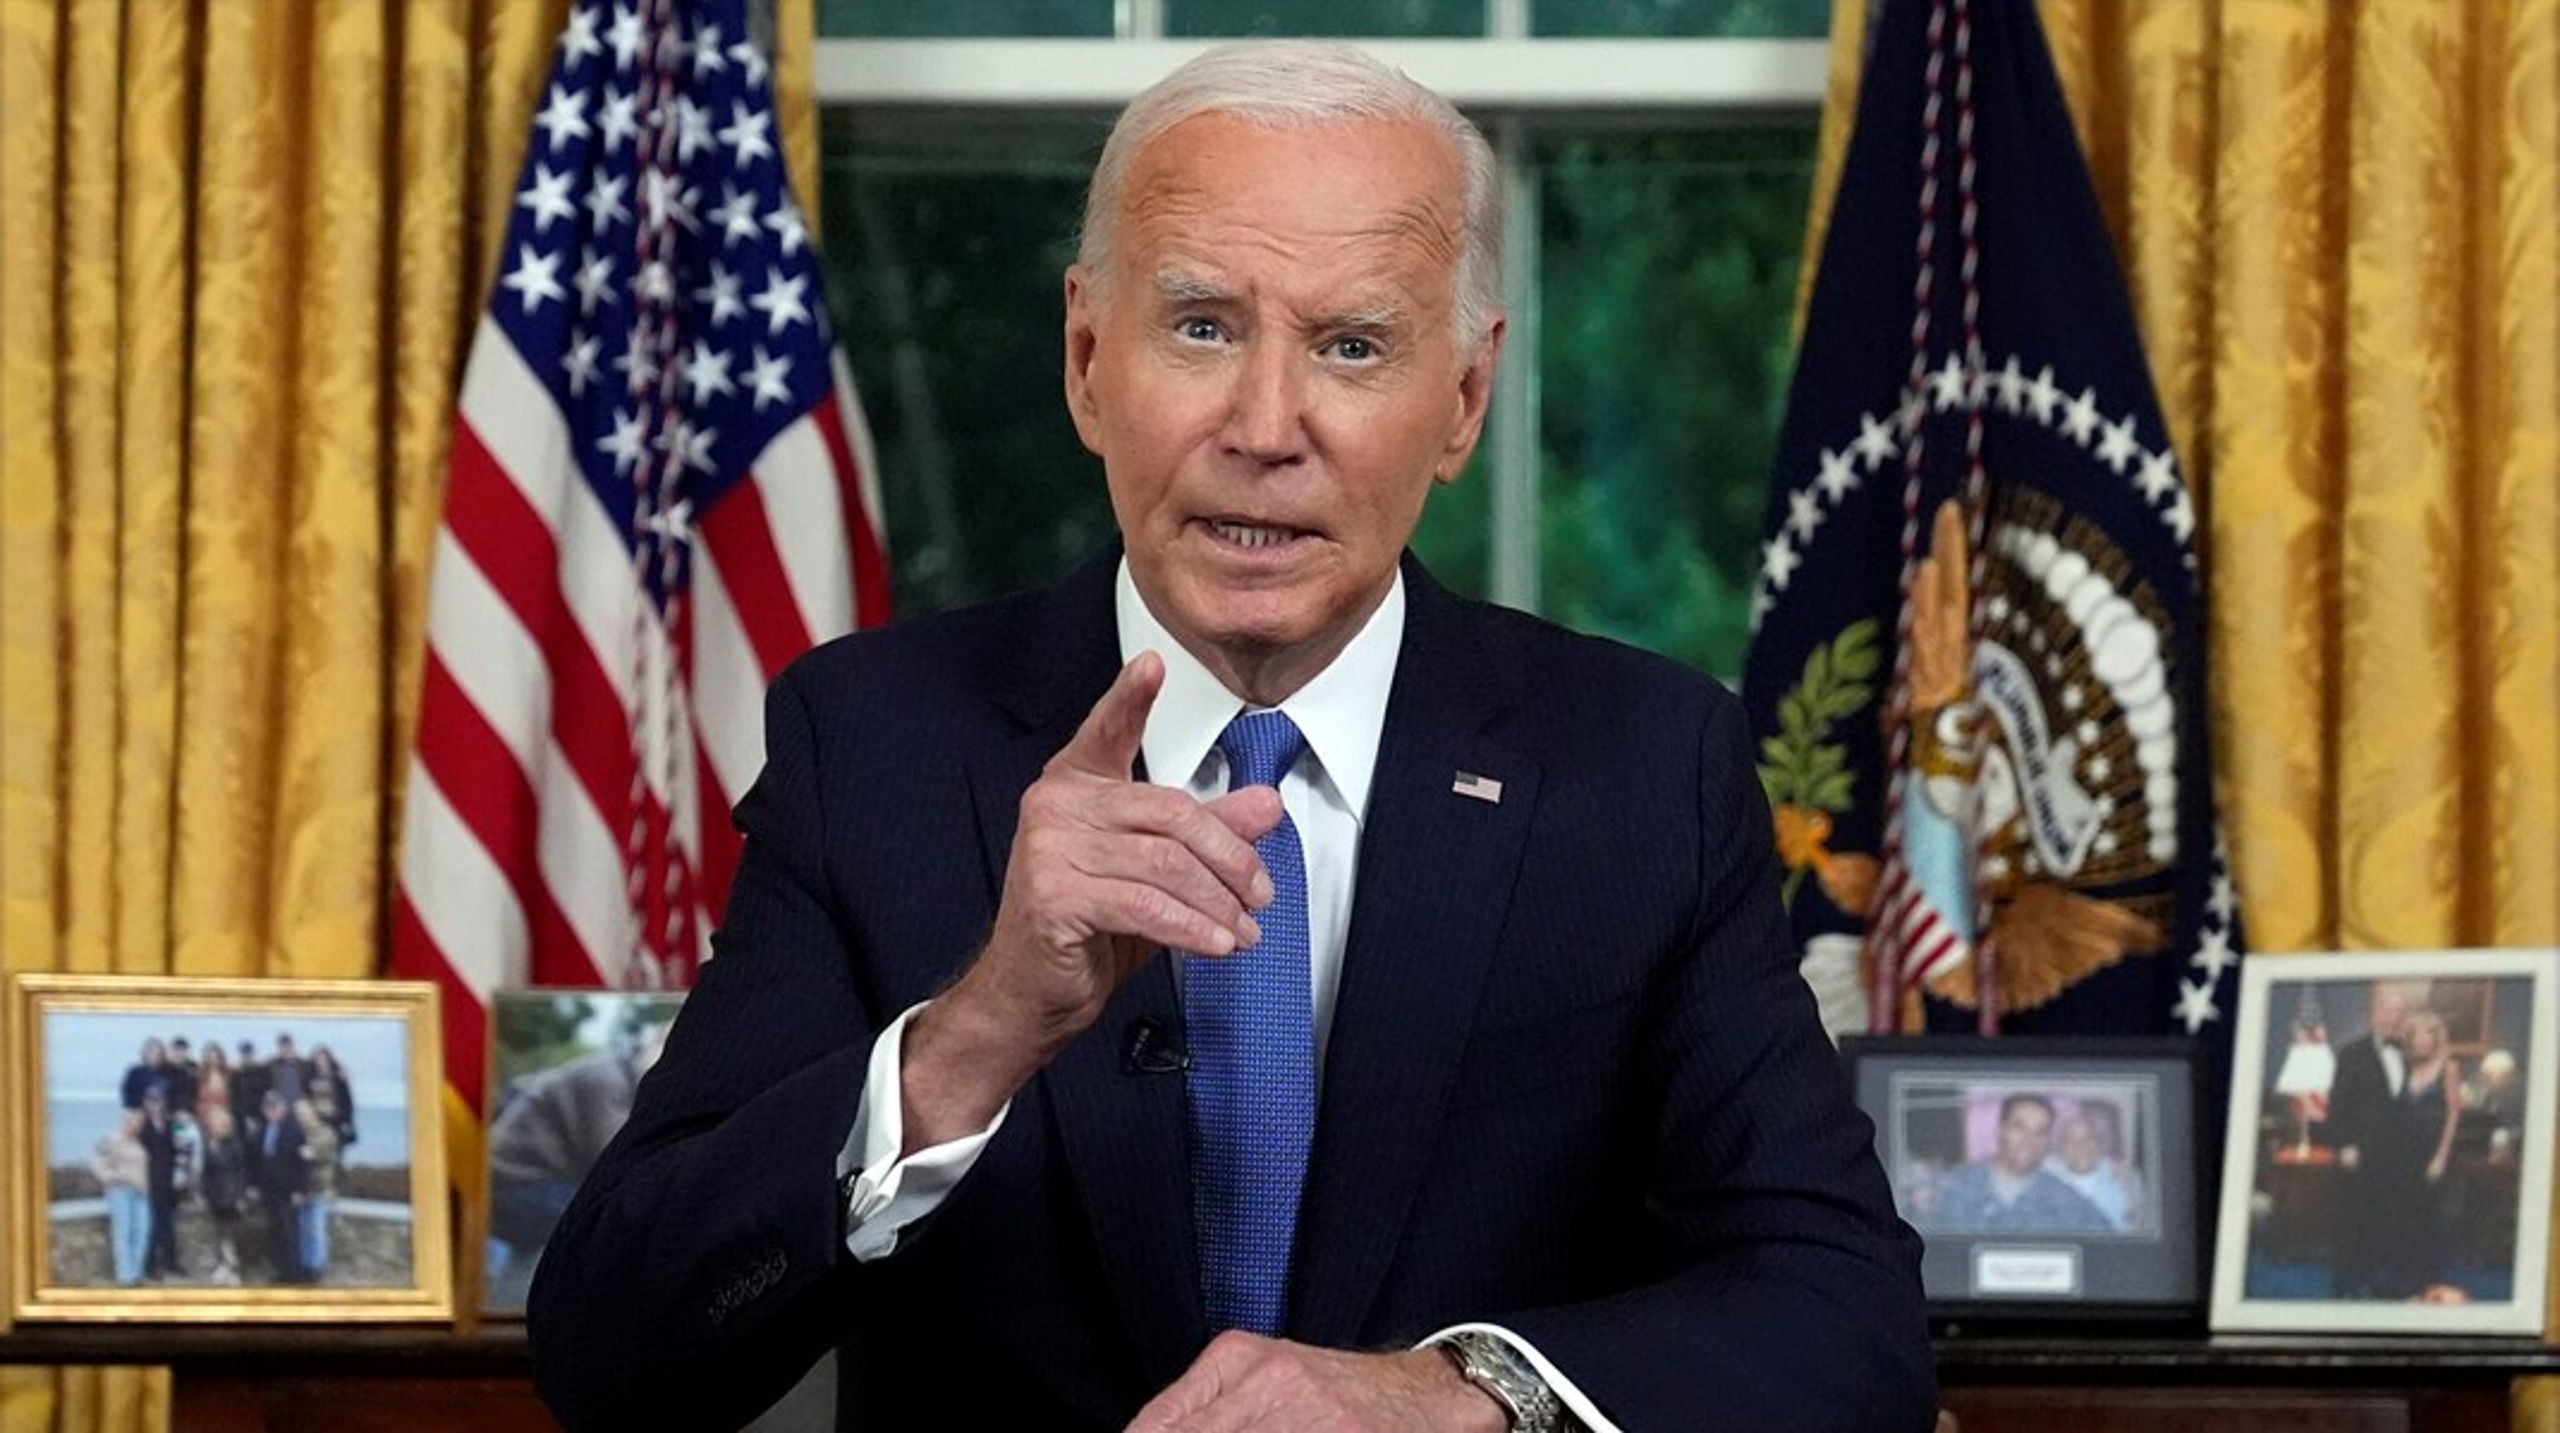 "Intet er vigtigere end at redde vores demokrati, heller ikke personlige ambitioner", sagde Joe Biden i en tale&nbsp;fra Det Hvide Hus.